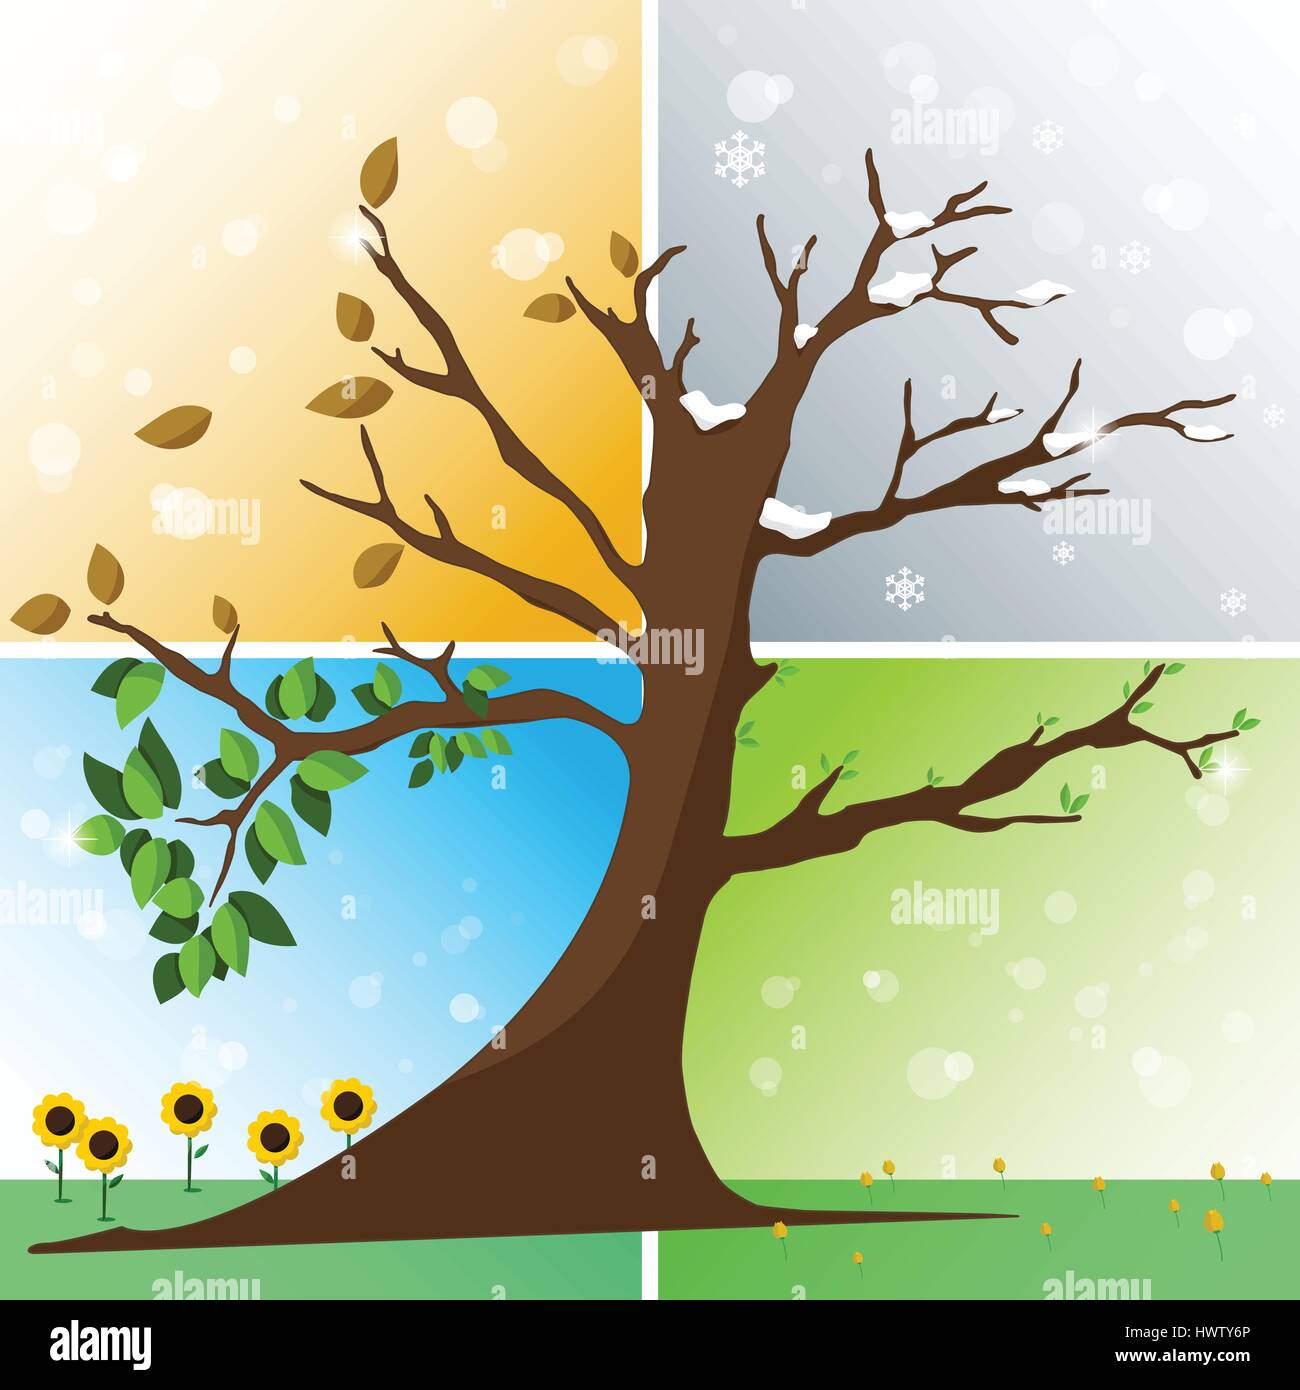 Quatre saisons en un arbre - Printemps, Été, Automne, hiver vector illustration Illustration de Vecteur